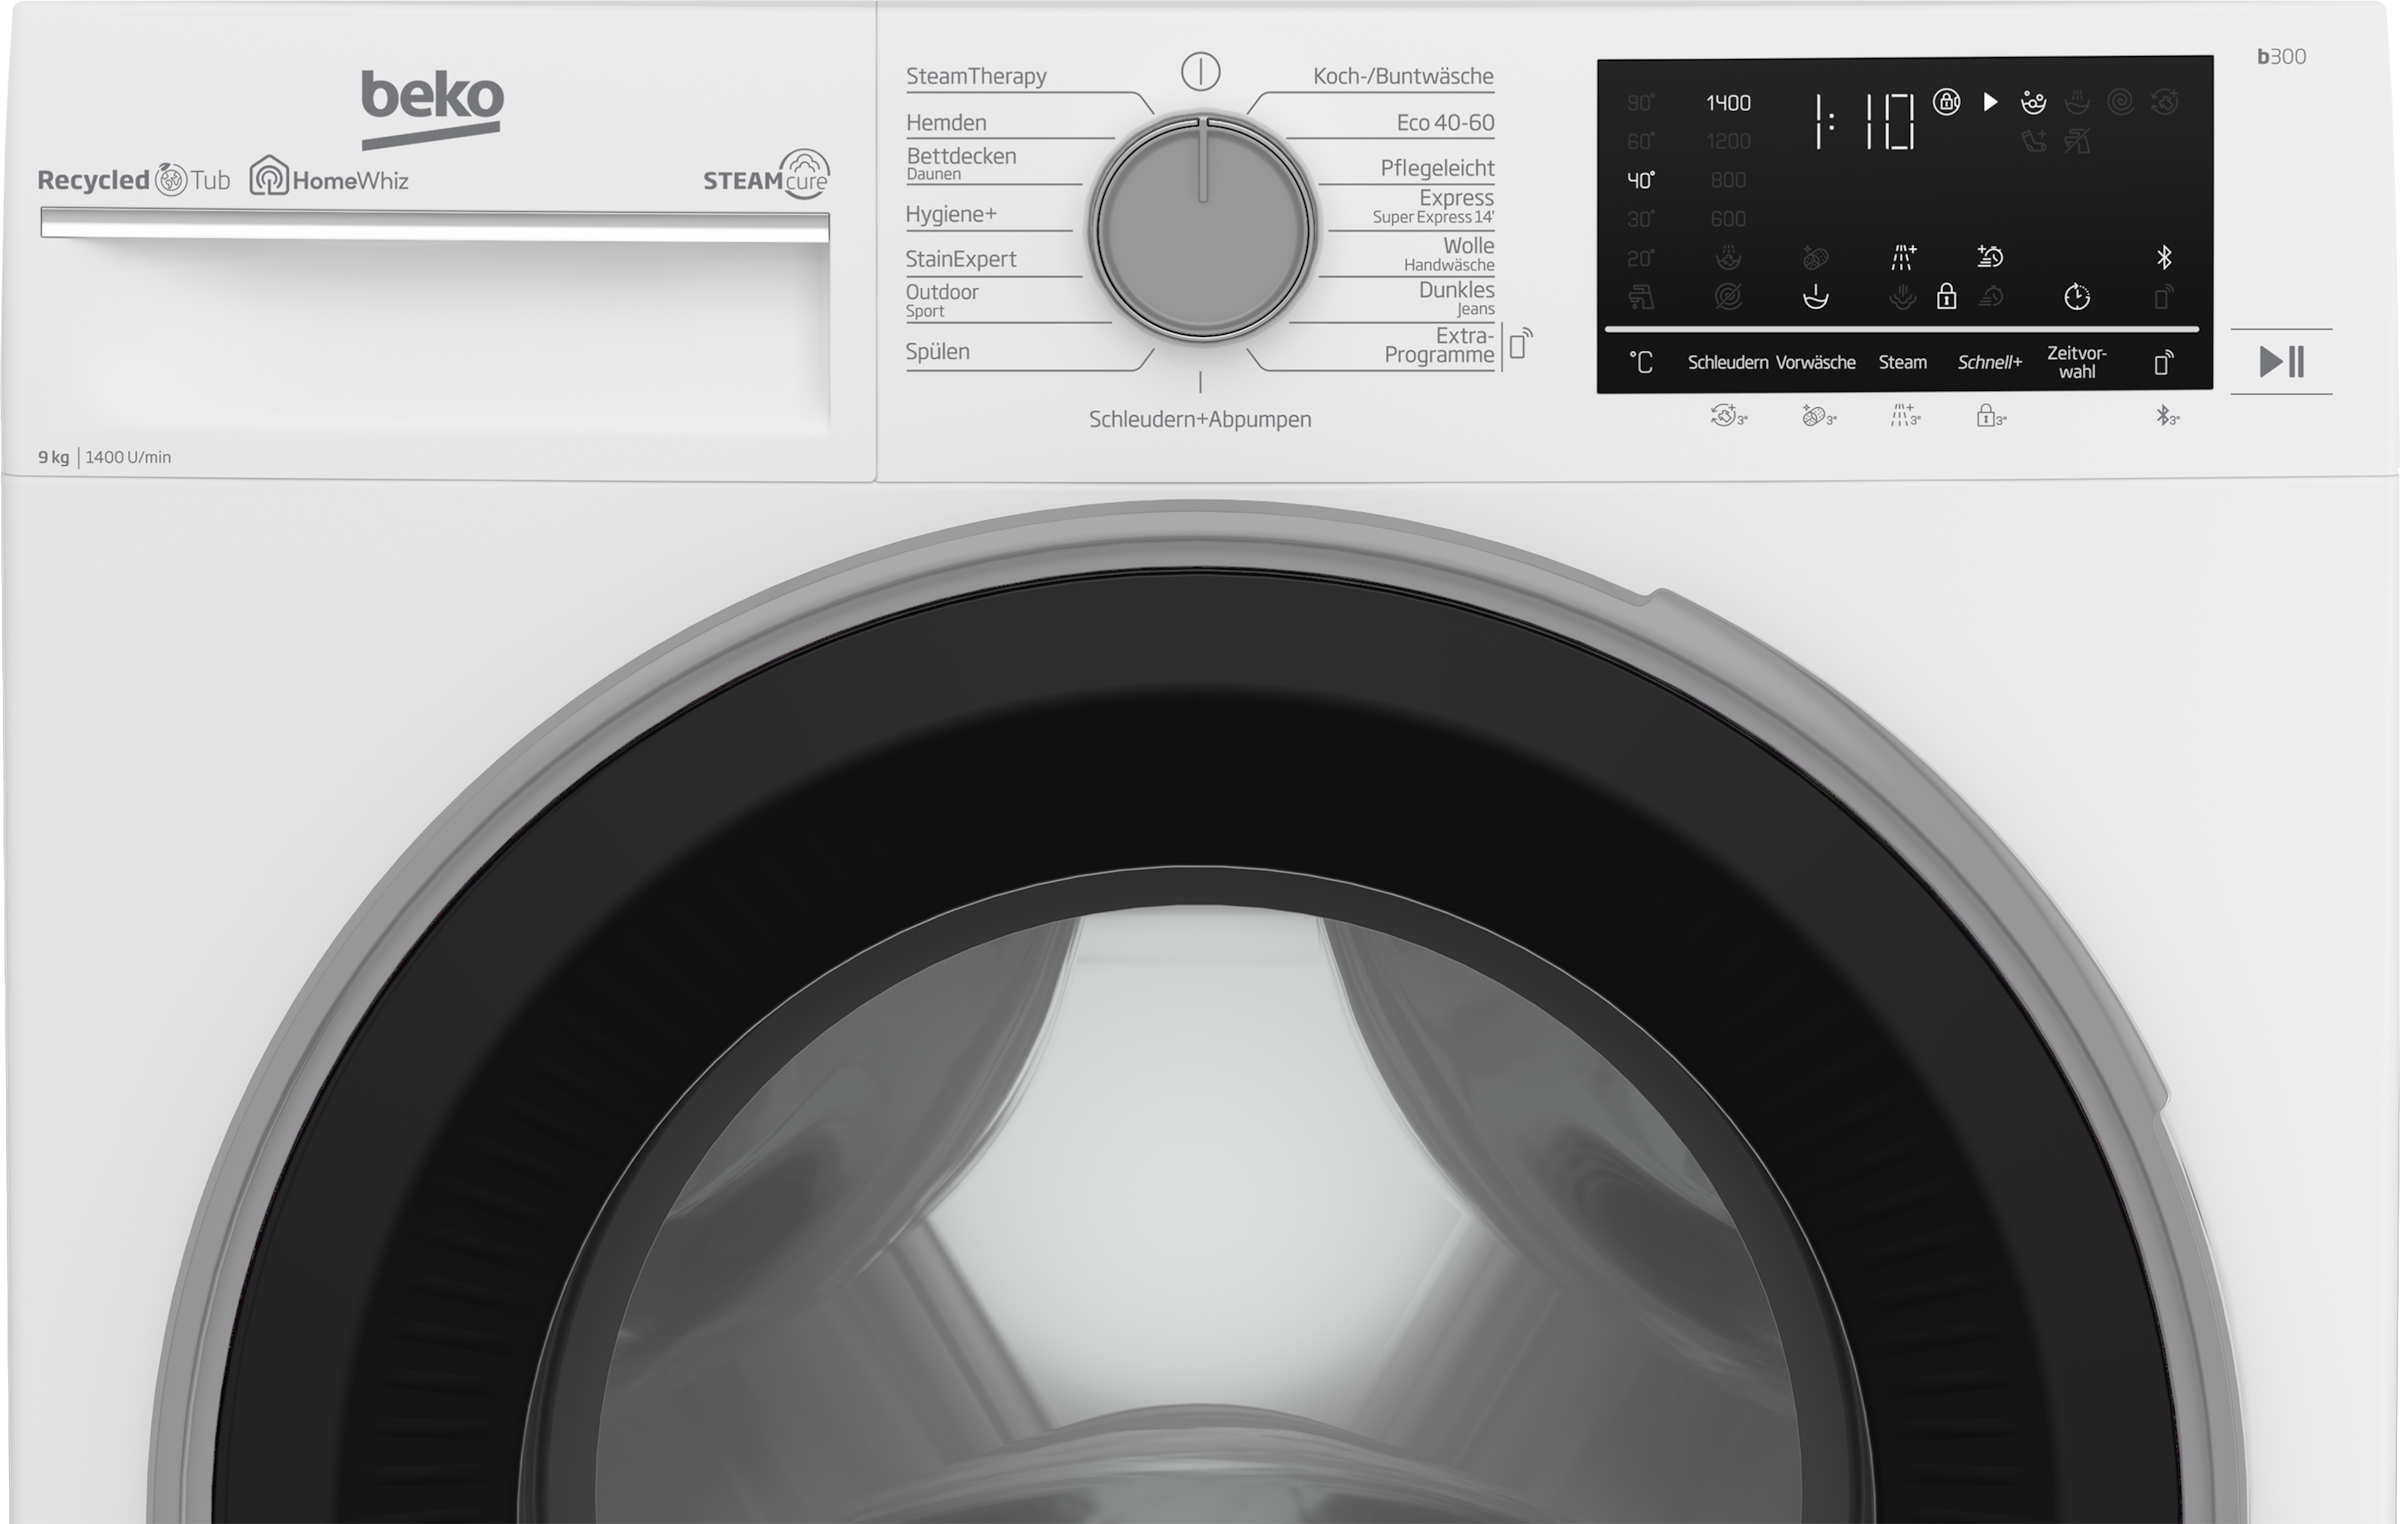 BEKO Waschmaschine, b300, B3WFU59415W2, kg, - mit XXL Garantie Jahren 1400 3 allergenfrei SteamCure U/min, 9 99